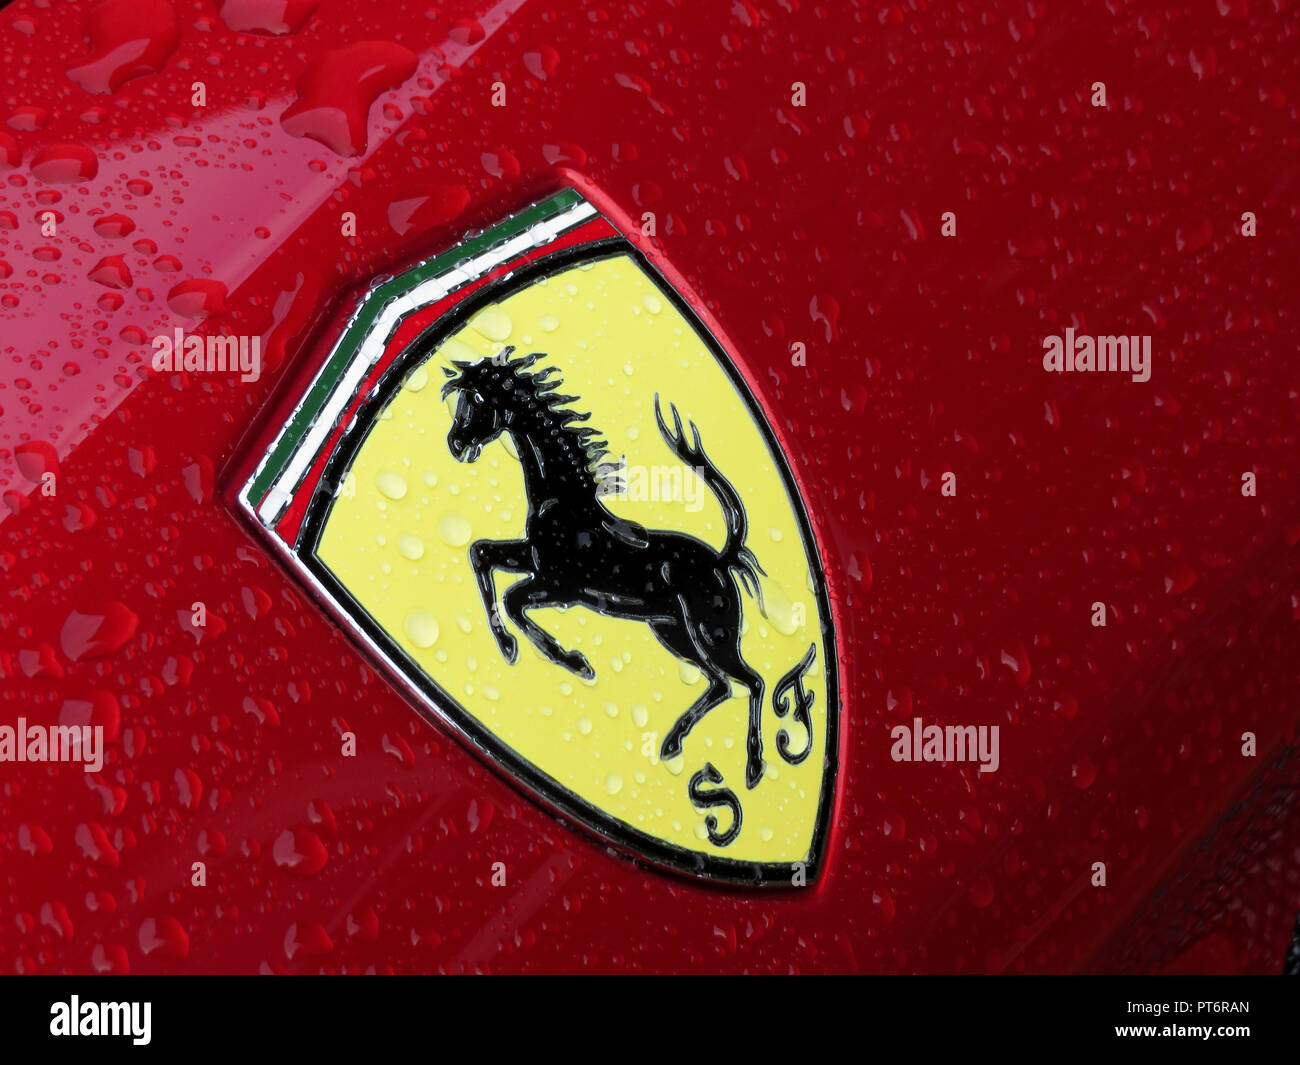 Ferrari Logo Lion Wallpaper #Ferrari, #FerrariLogo, #LionW…